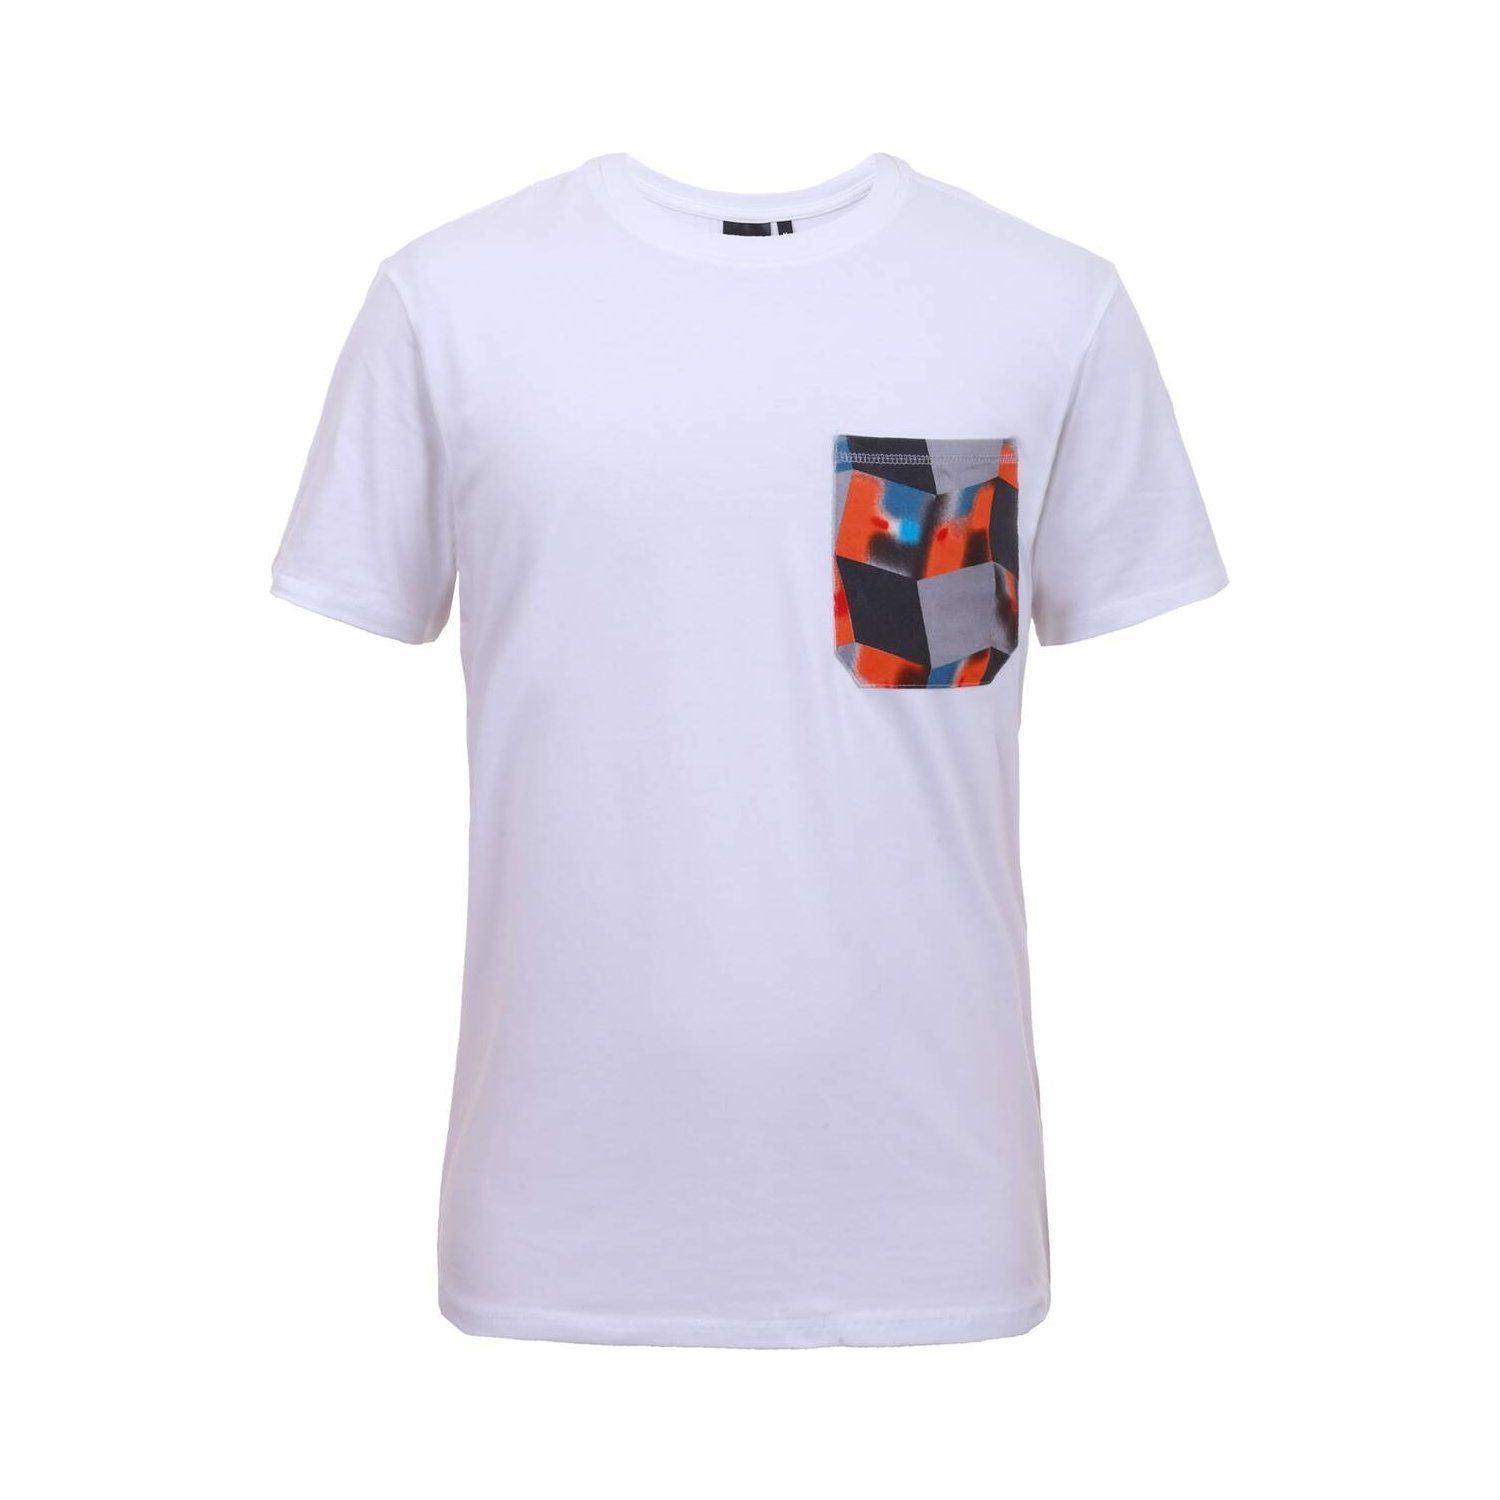 / Icepeak WEISS T-Shirt Herren - T-Shirt S 980